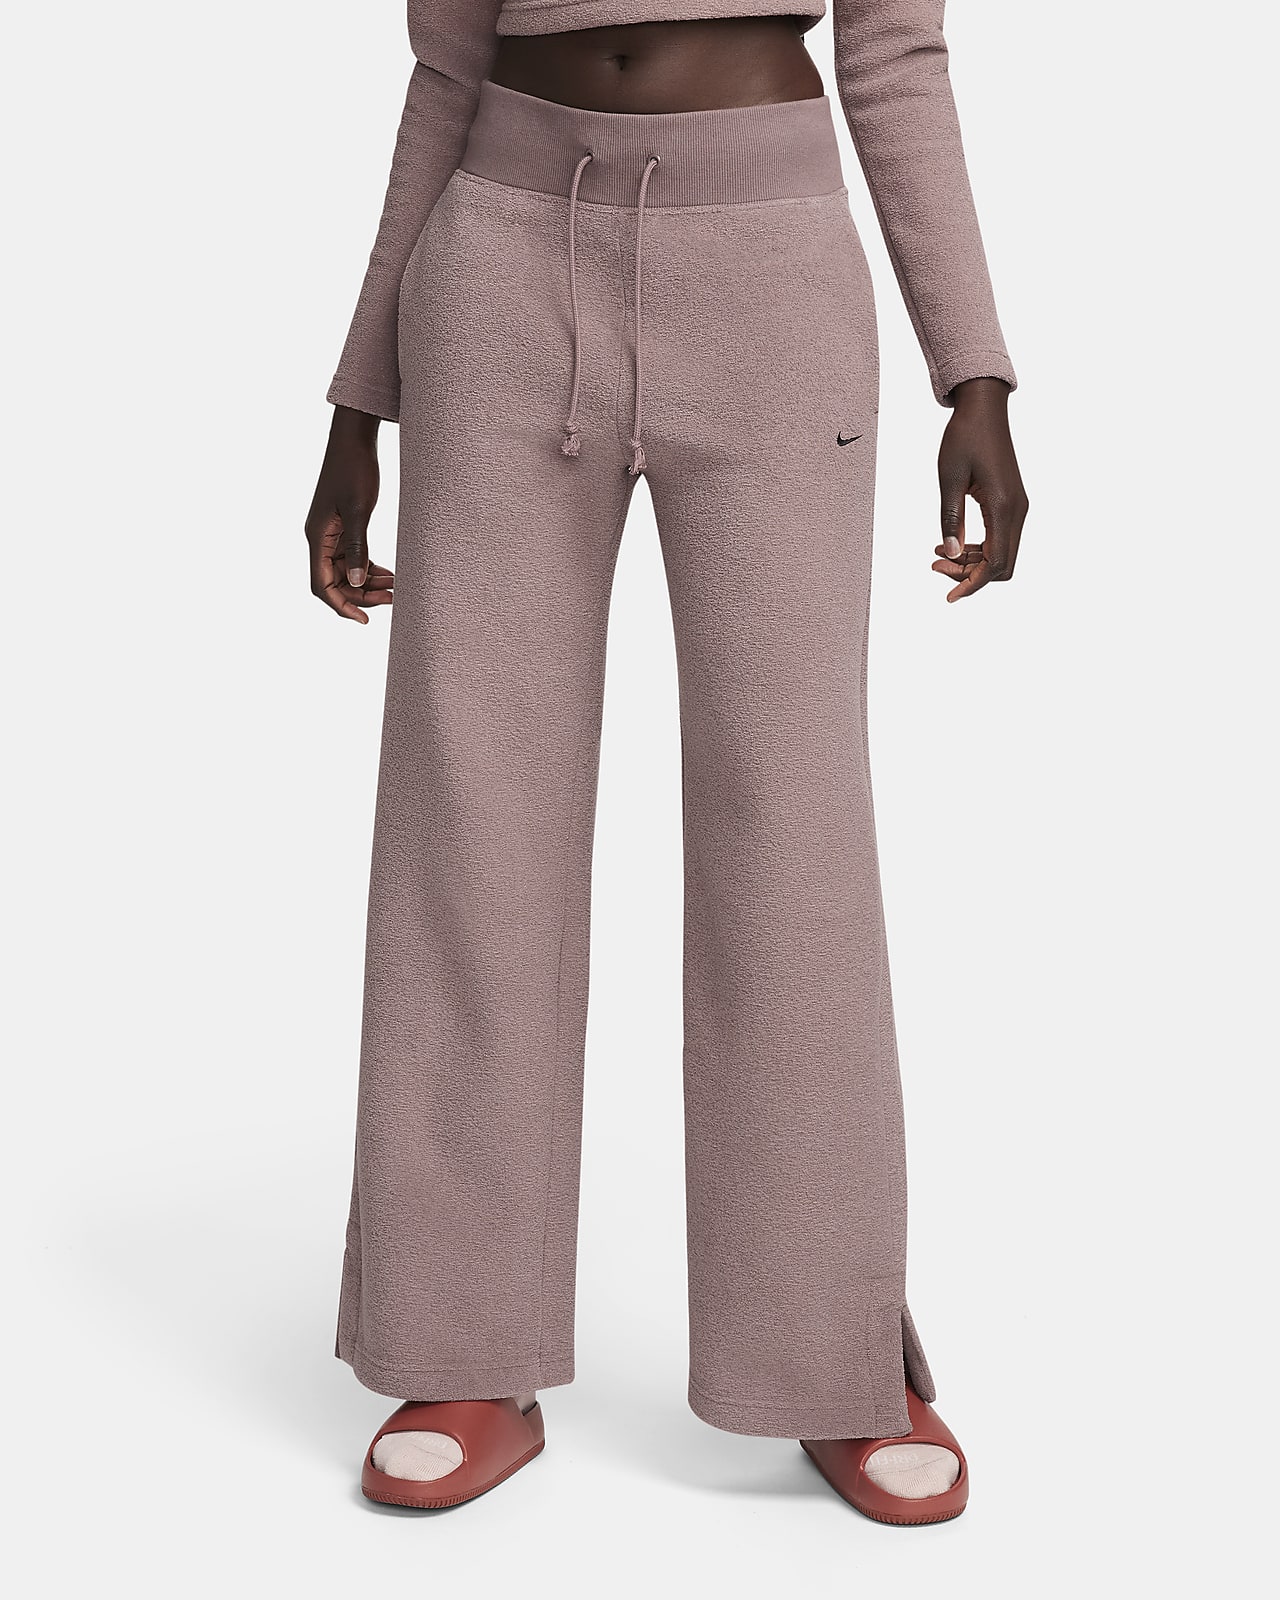 Nike Sportswear Phoenix Plush vevd bukse med lun fleece og høyt liv og vide ben til dame